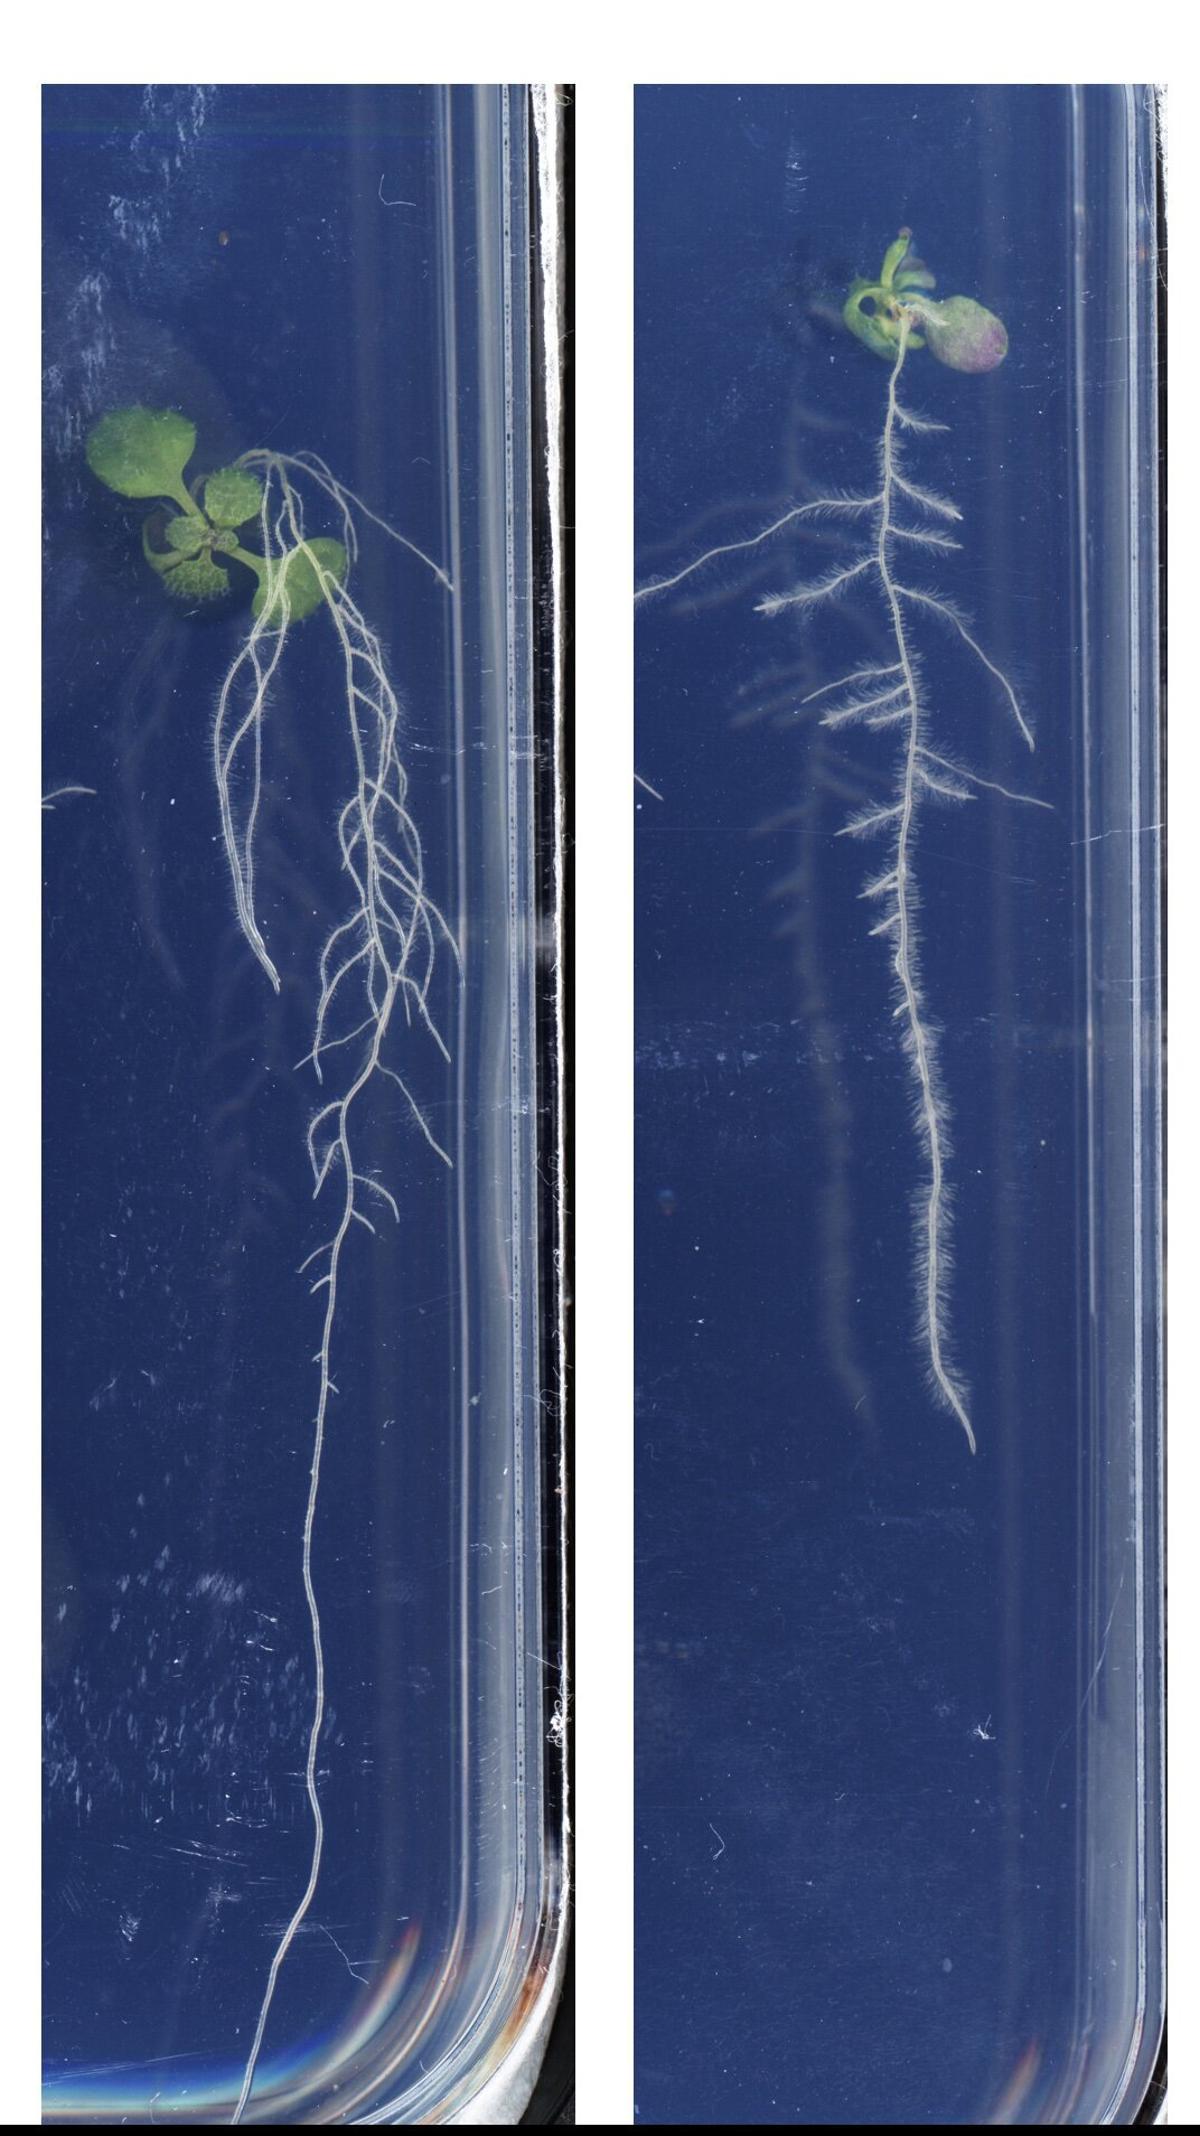 Plántulas de Arabidopsis thaliana sin tratar (izquierda) y tratadas con mebendazol (derecha).